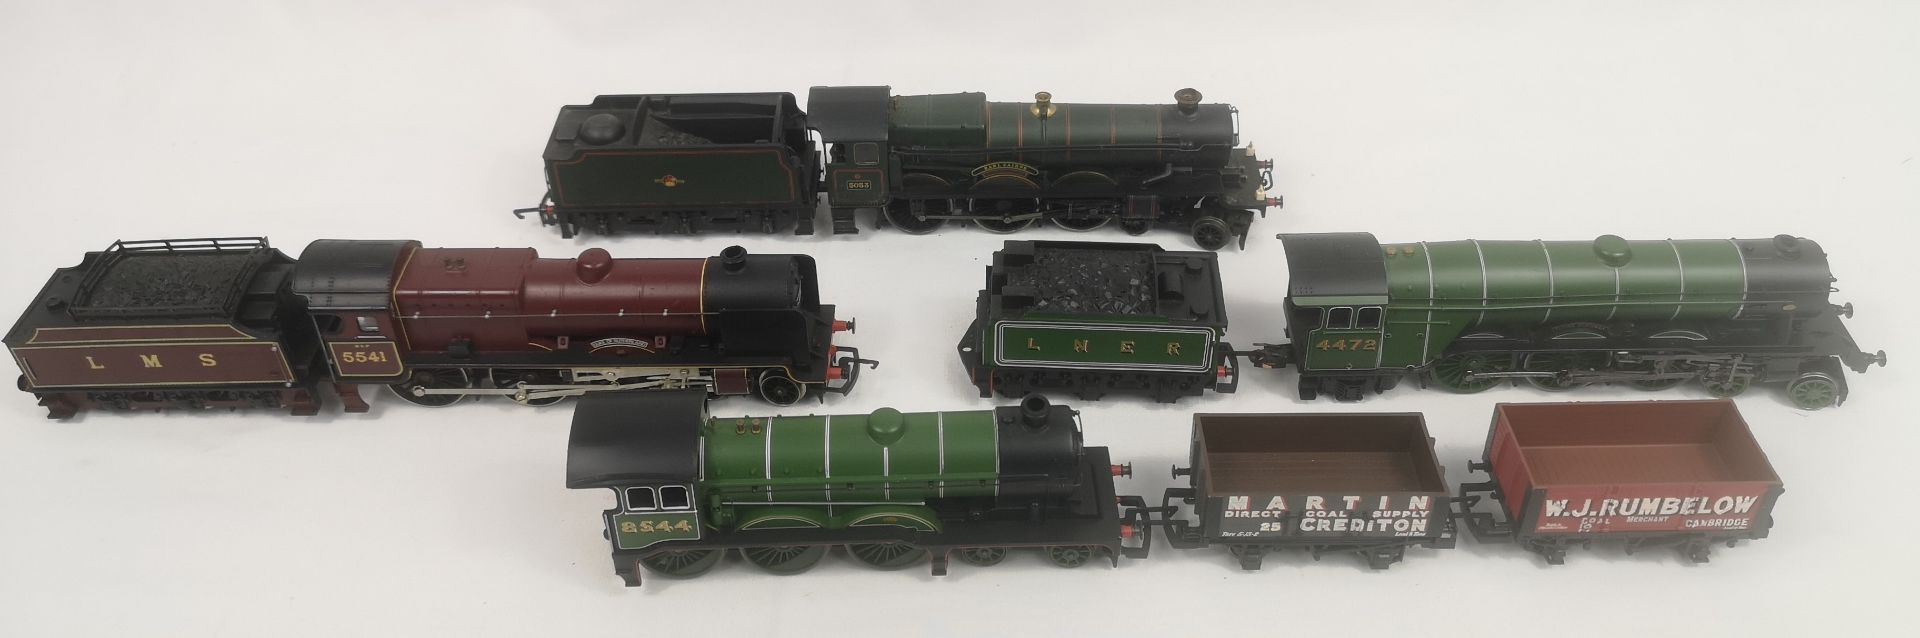 Three Hornby 00 gauge locomotives and tenders